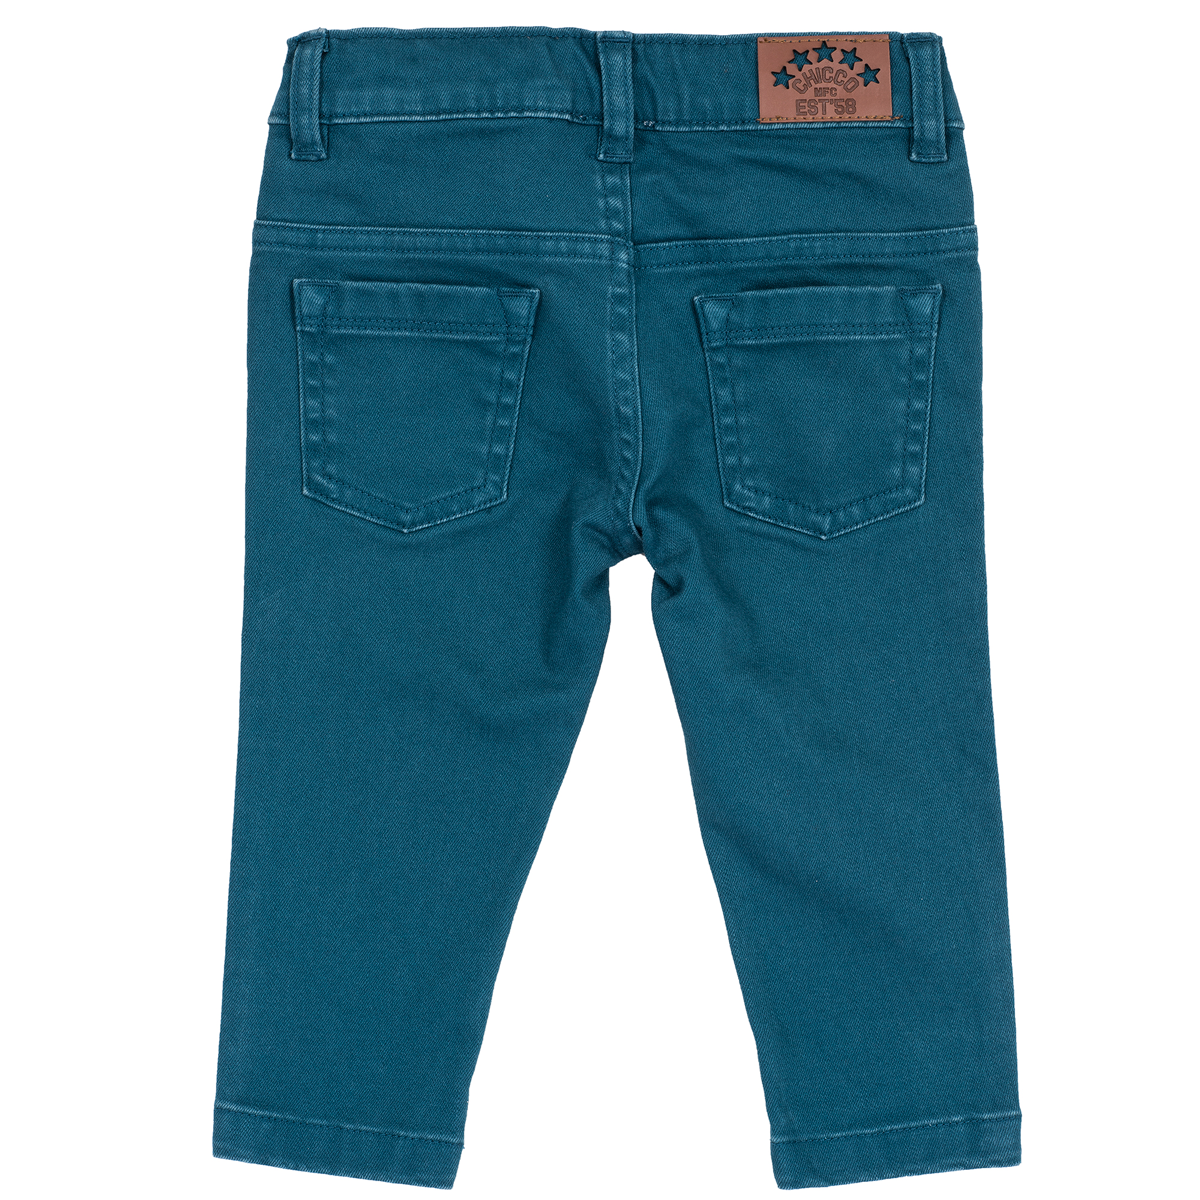 Pantalon copii Chicco, albastru deschis, 24783